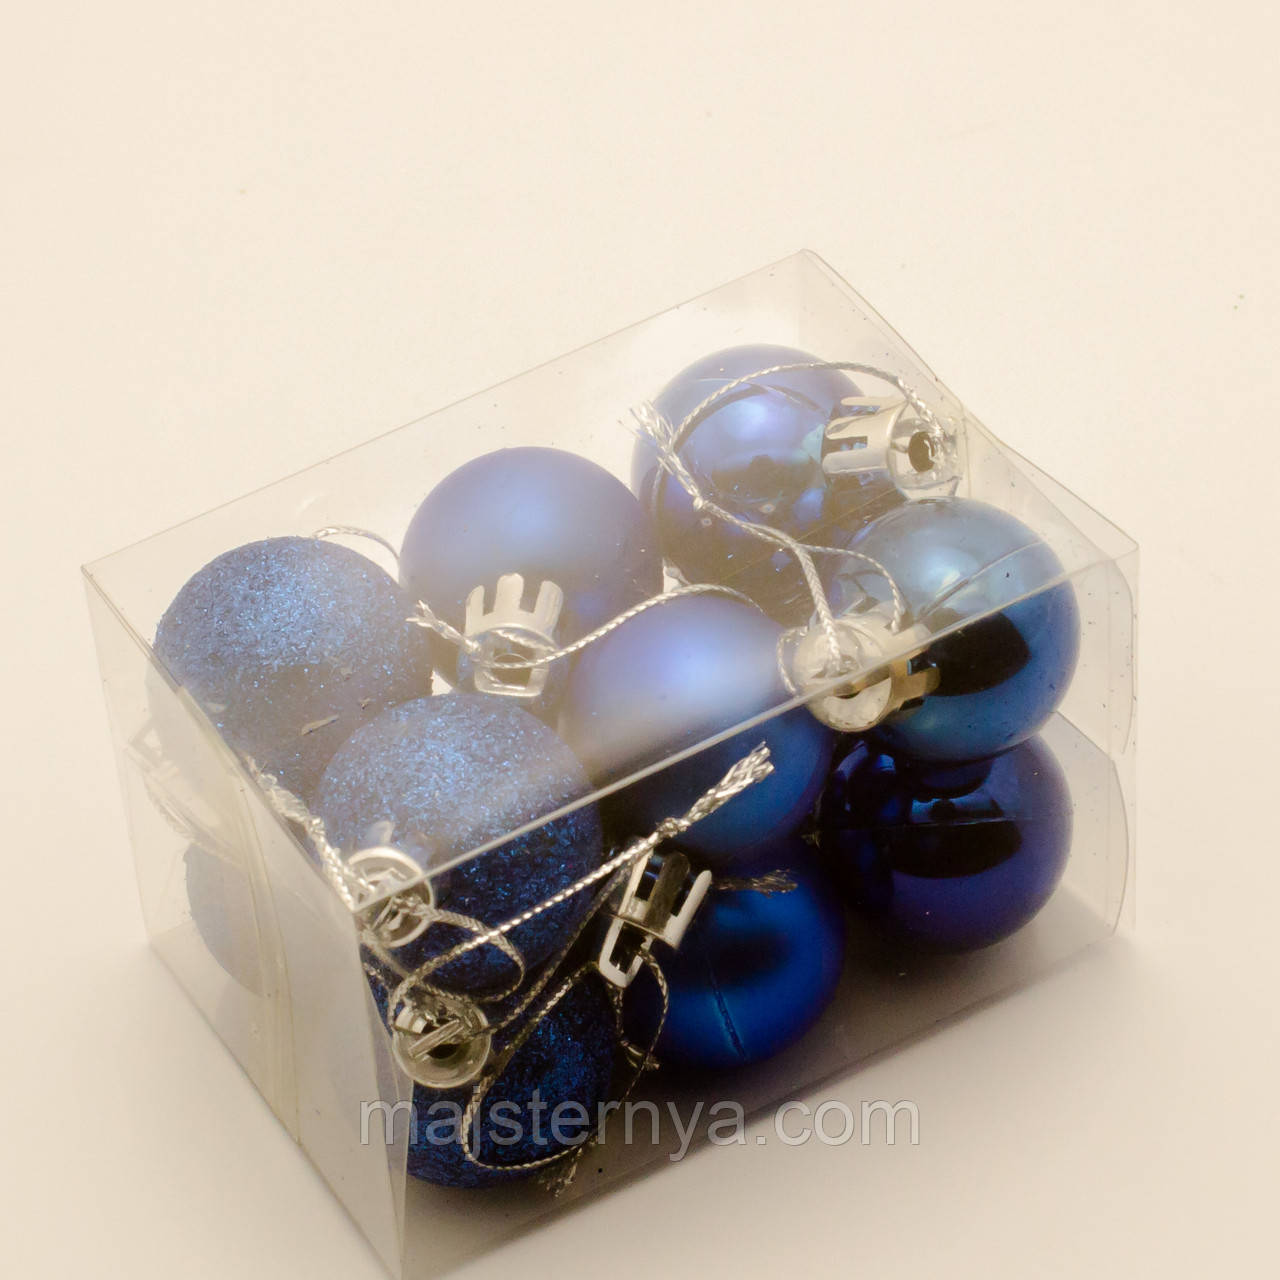 Новорічні іграшки на ялинку - кулі 7см (12шт в упаковці) синього кольору